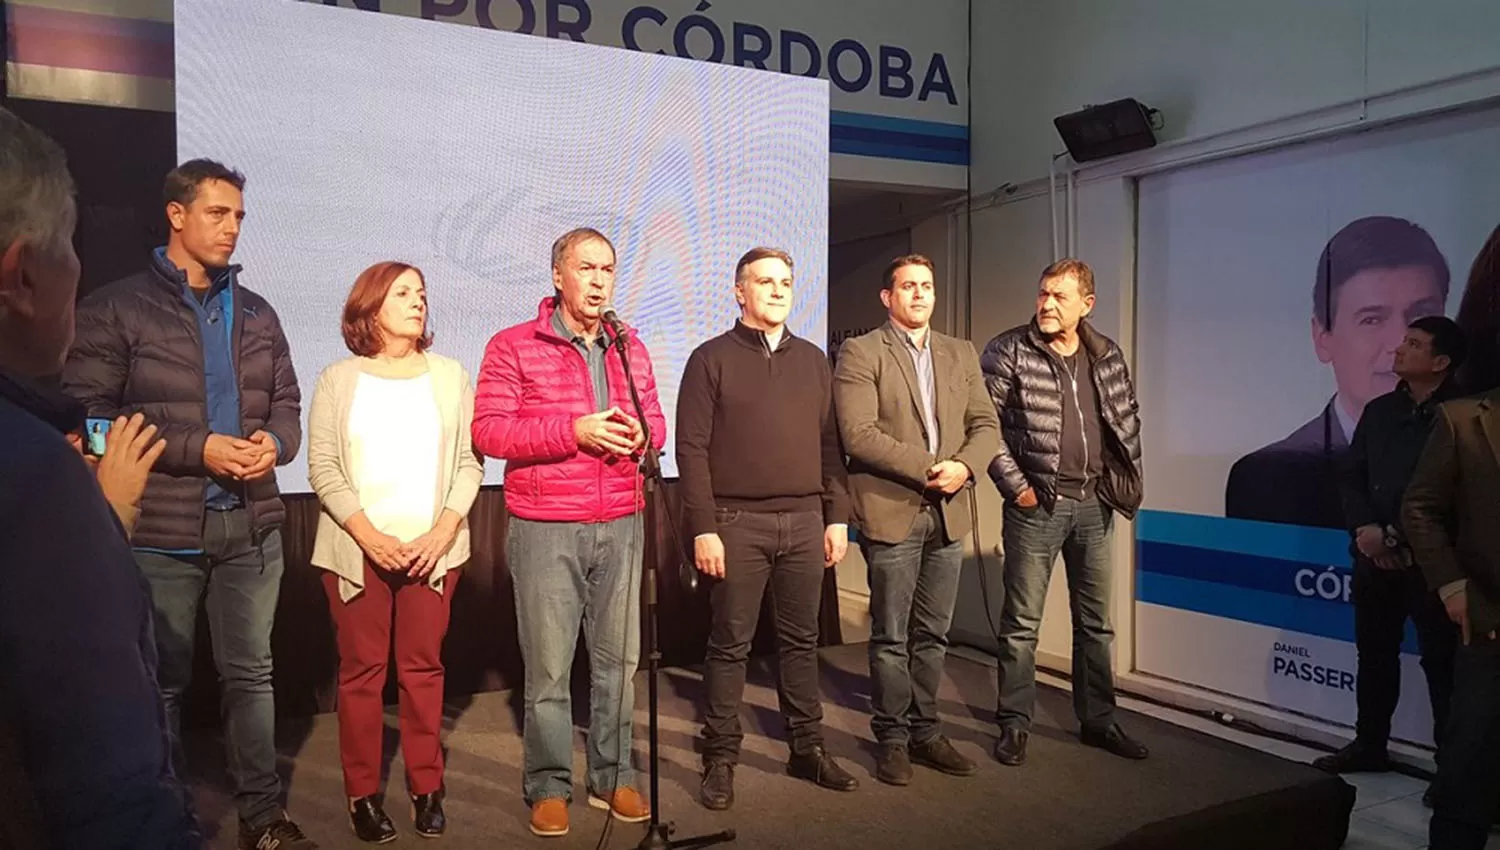 Eel gobernador de Córdoba, Juan Schiaretti (frente al micrófono), admitió el triunfo de la coalición Cambiemos. FOTO TOMADA DE TWITTER